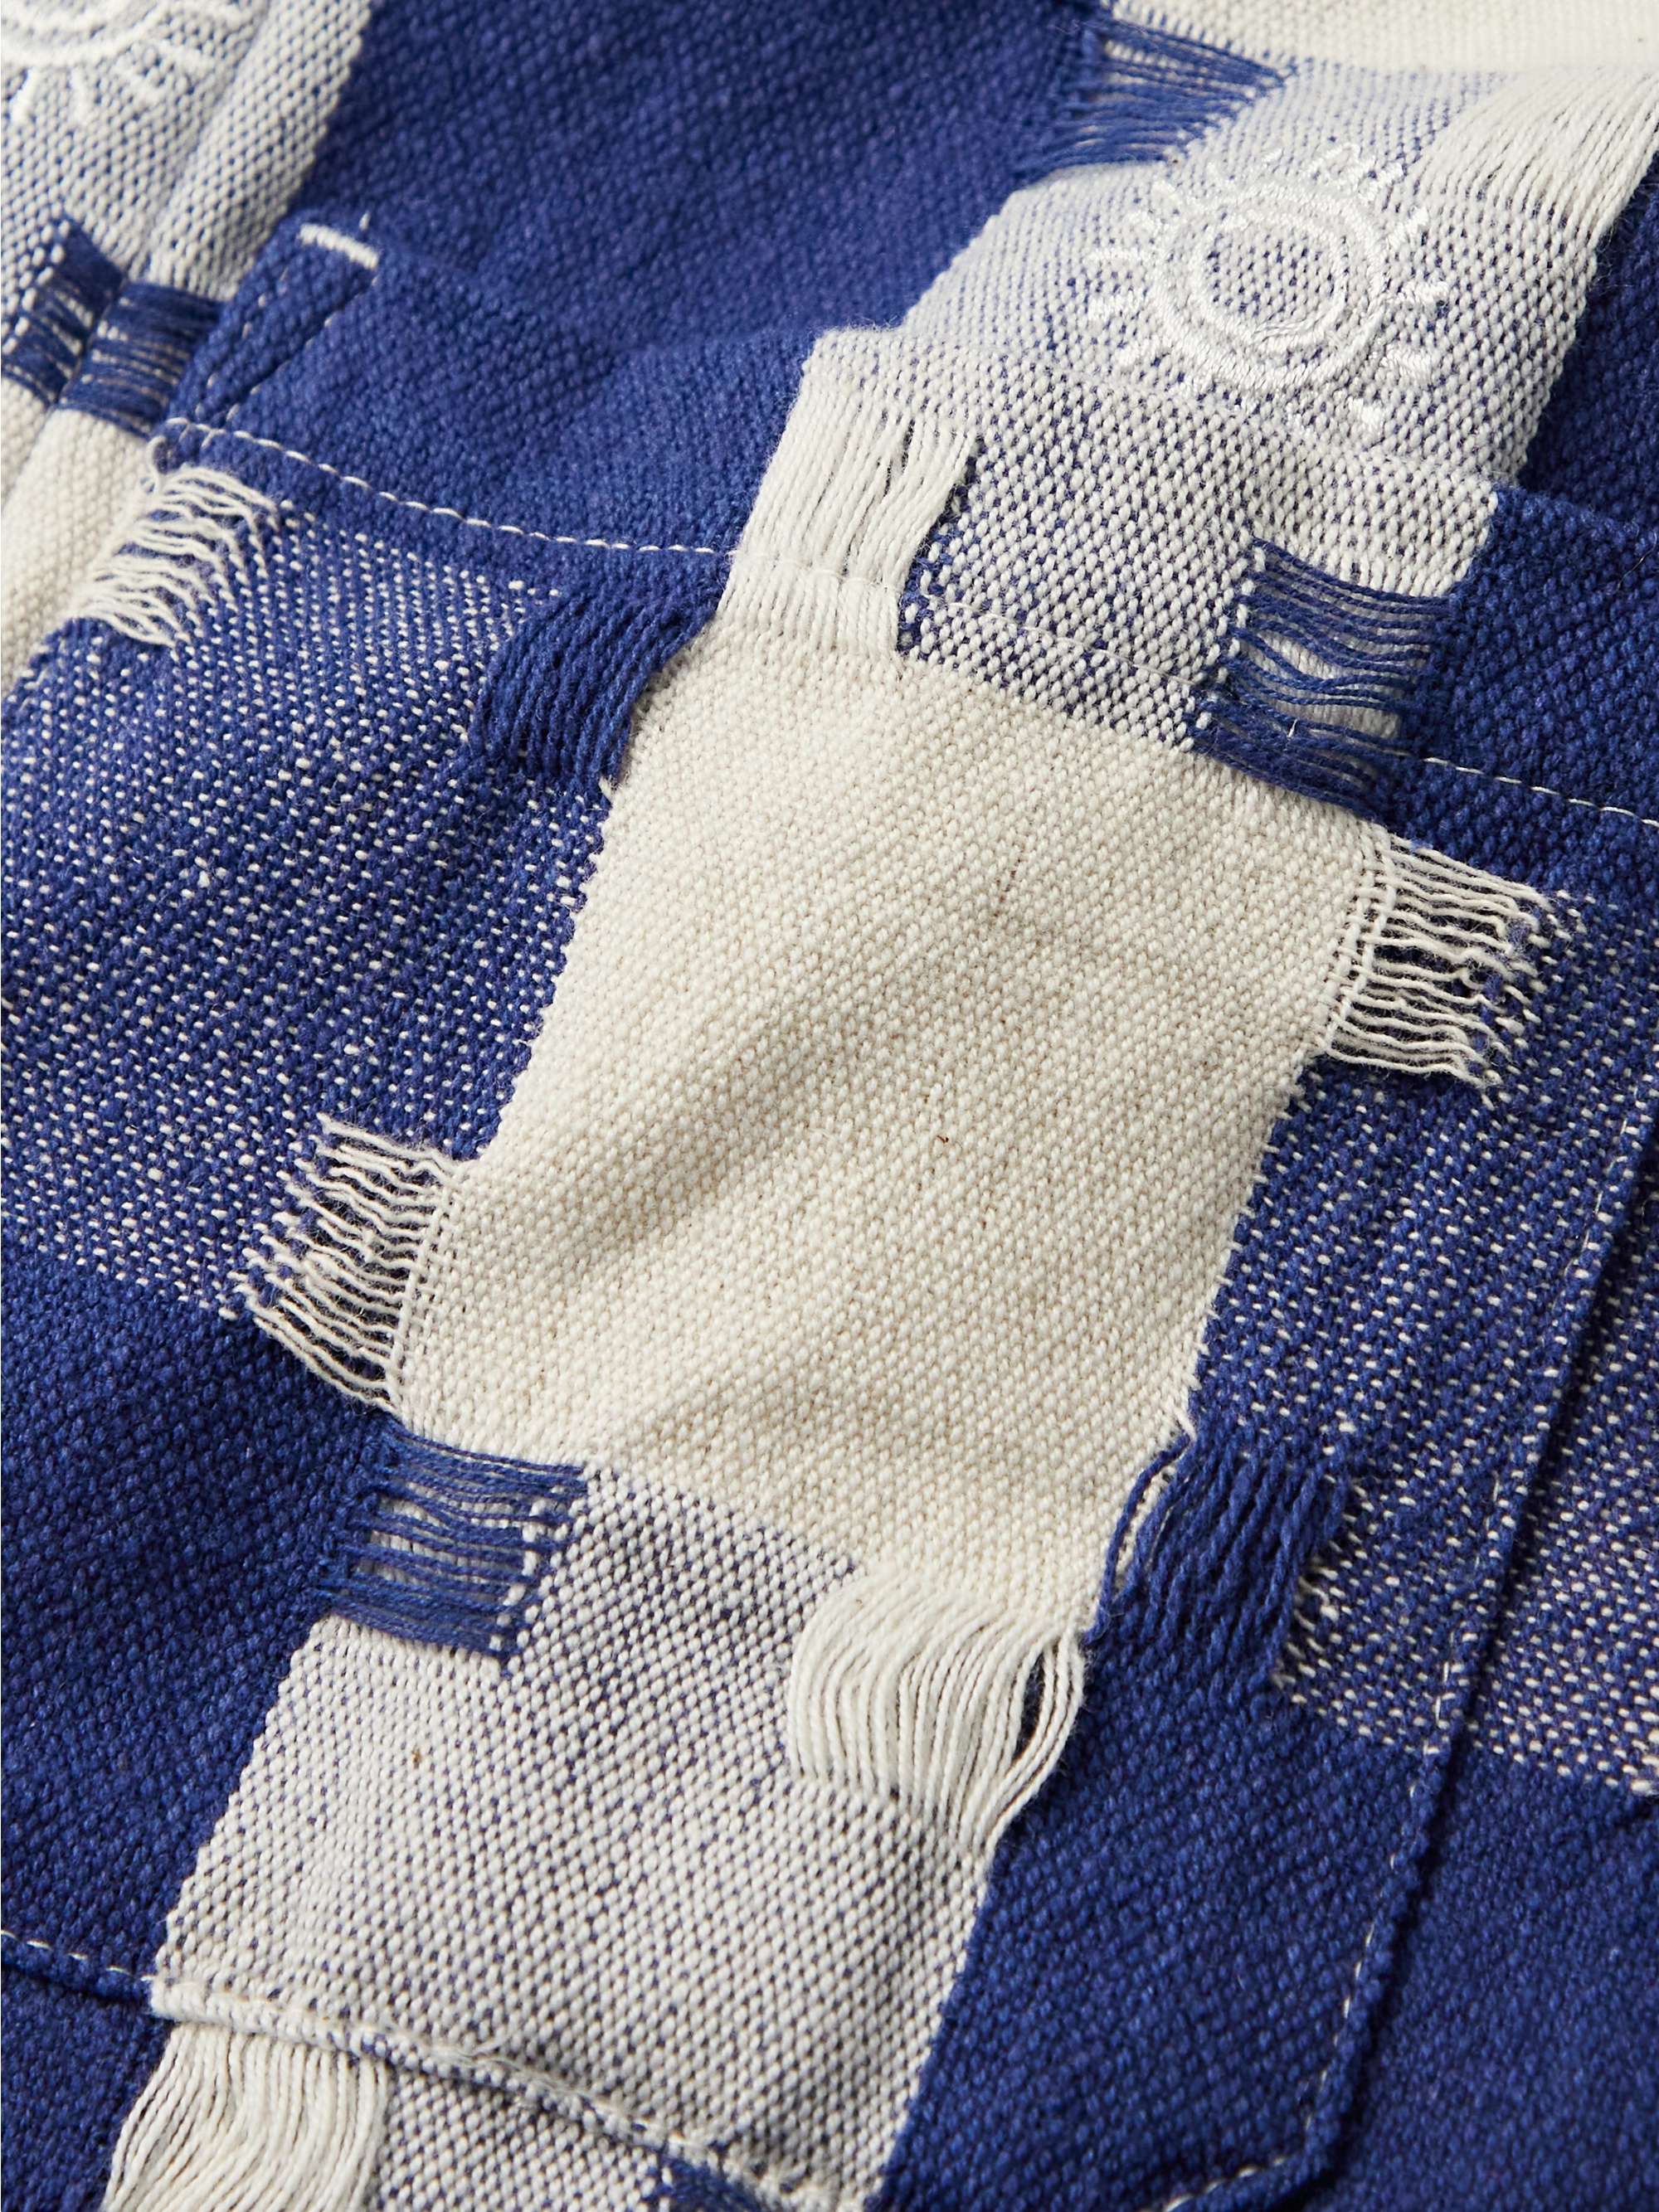 SMR DAYS Astir Textured-Cotton Chore Jacket